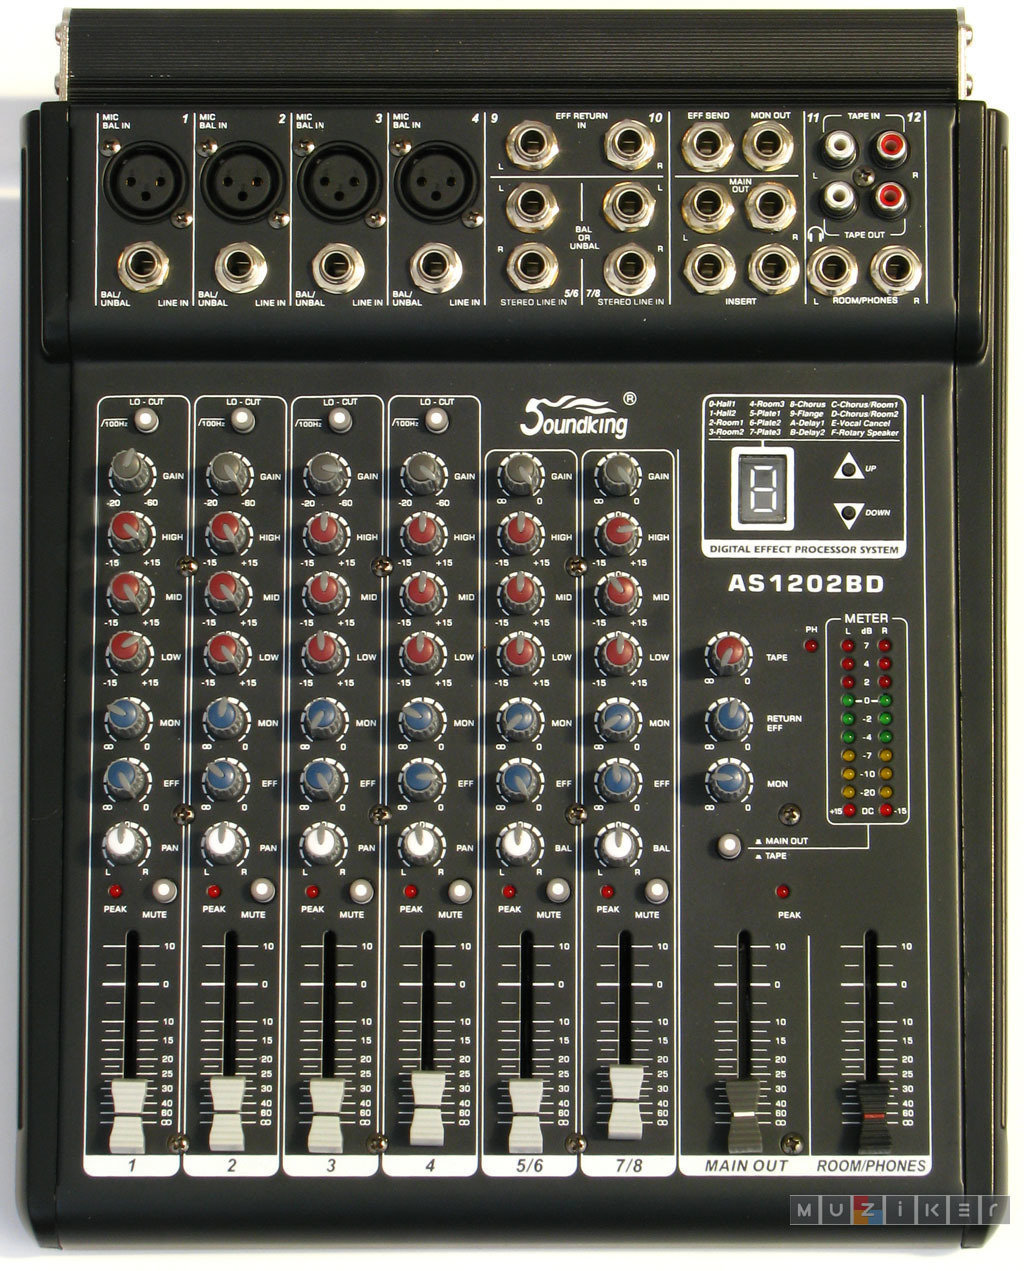 Table de mixage analogique Soundking AS 1202 BD